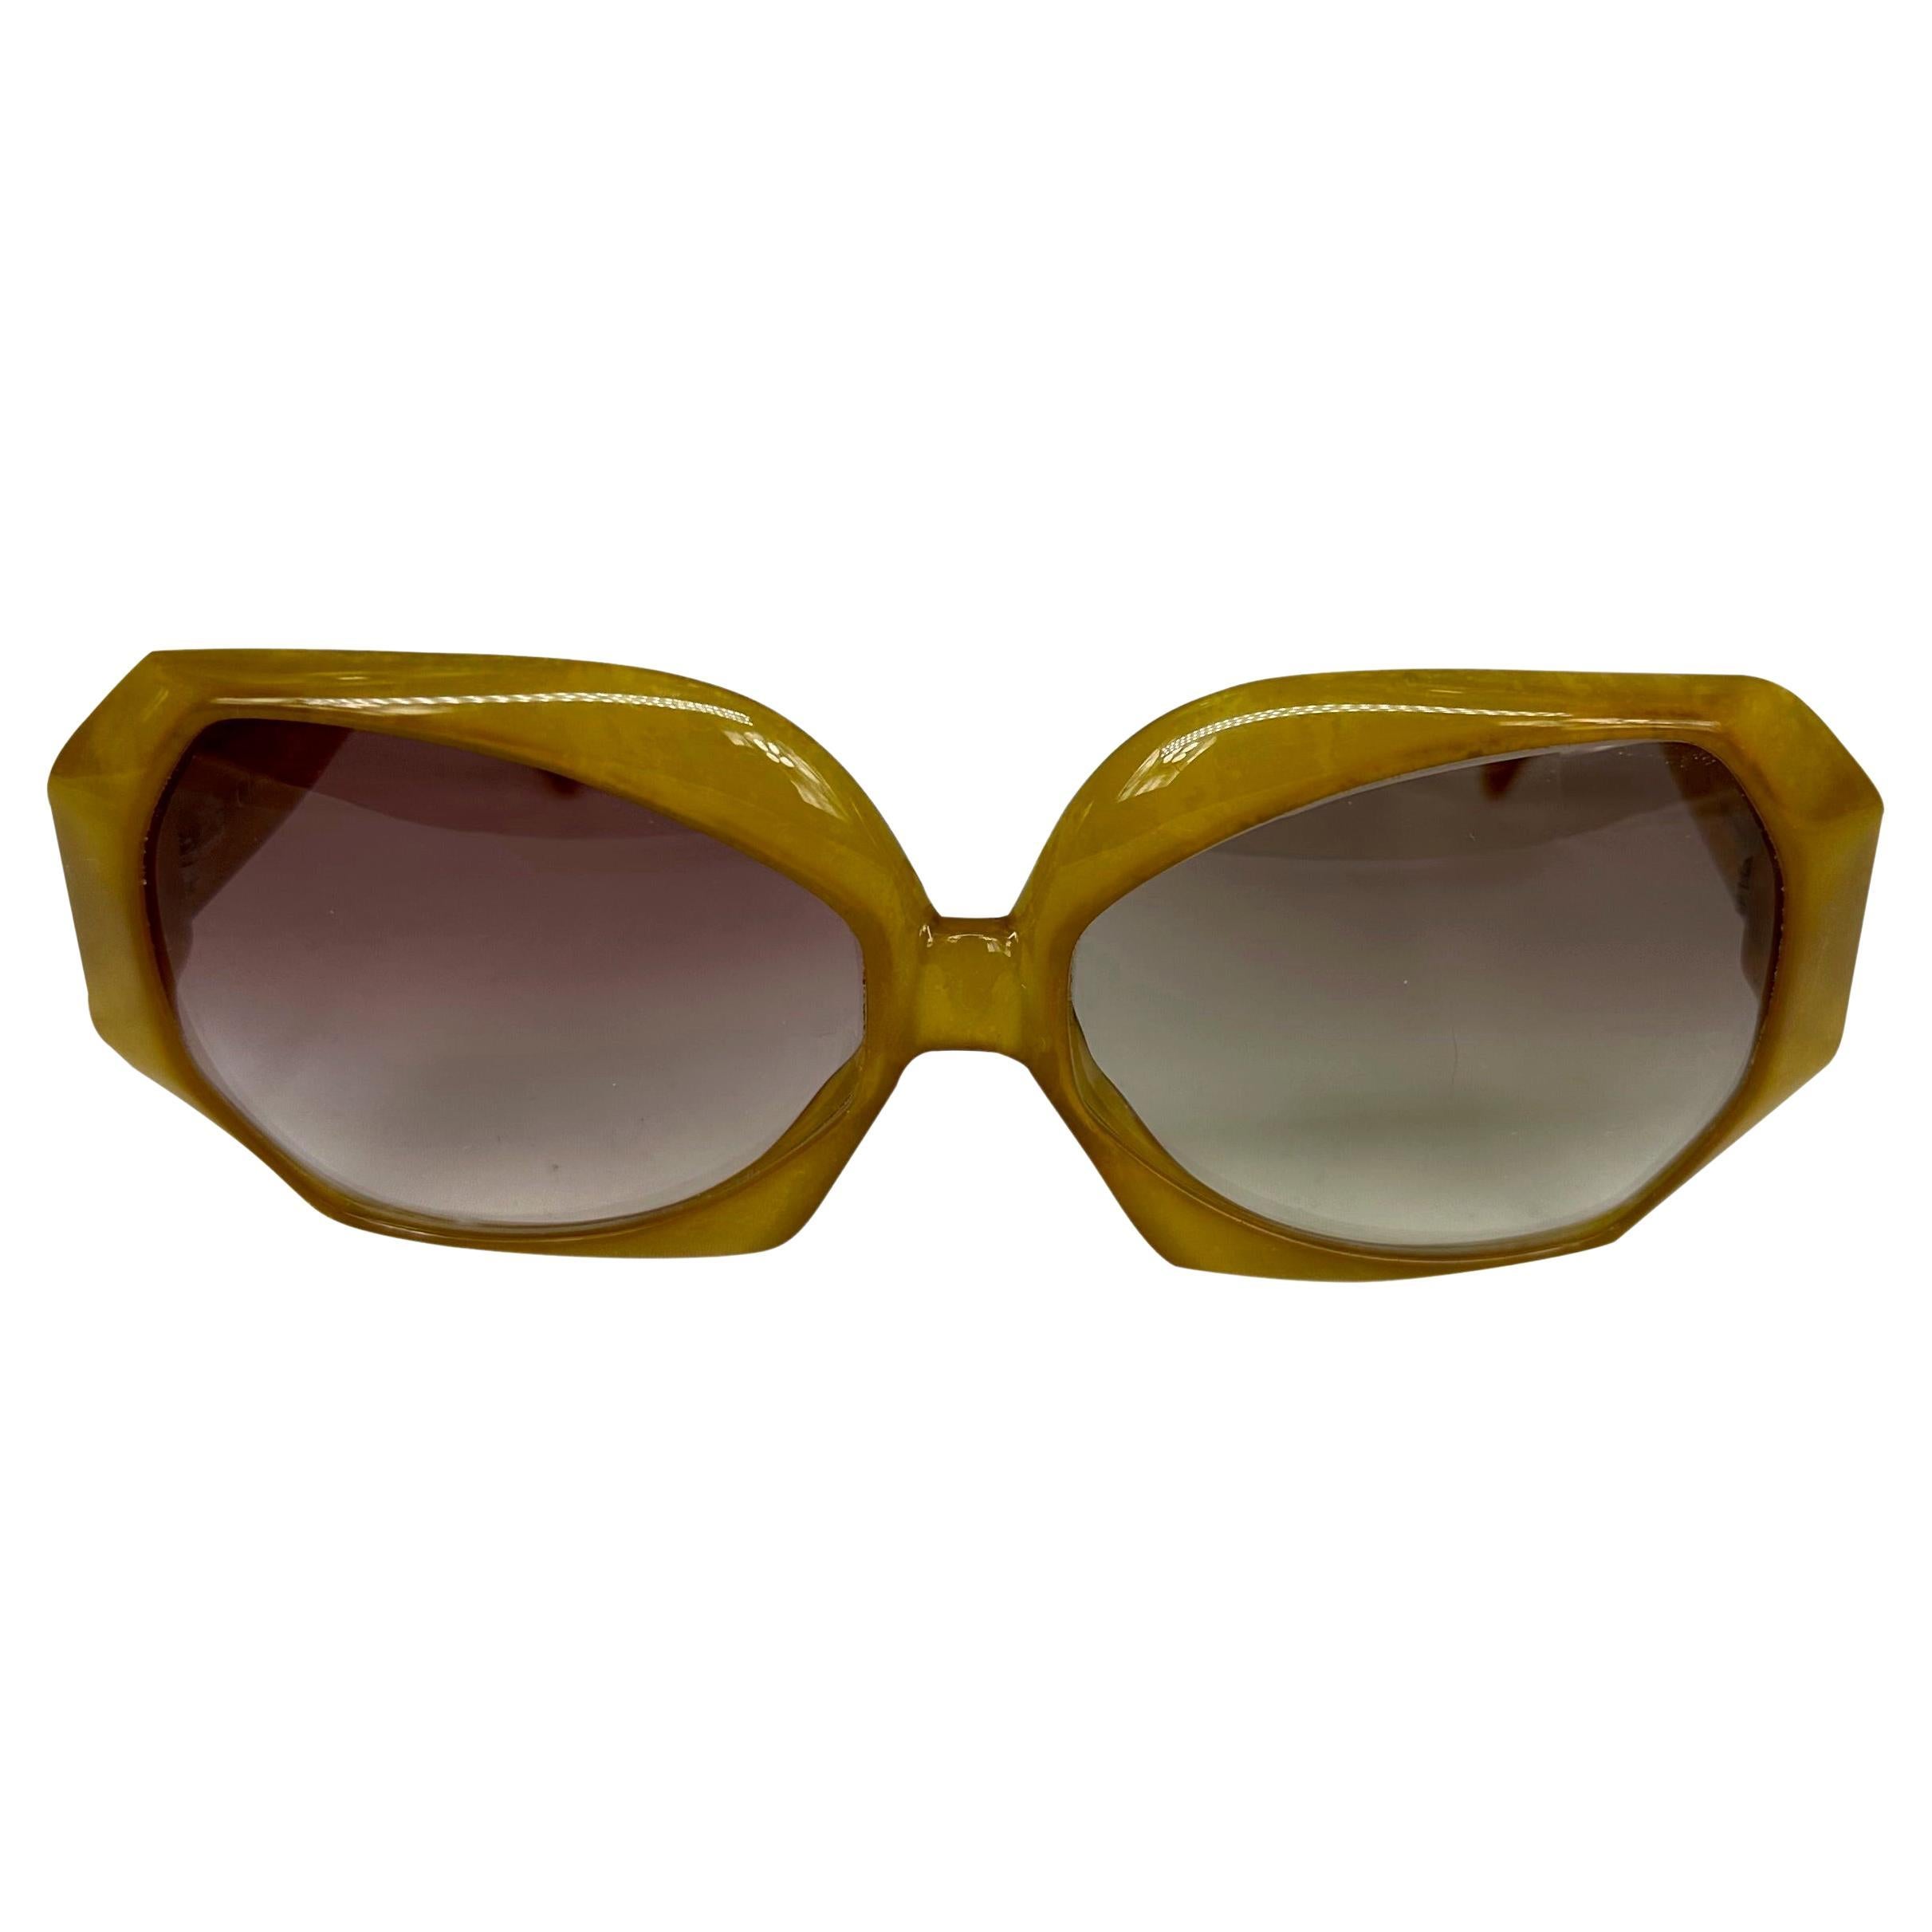 Te presentamos un par de fabulosas gafas de sol Christian Dior de gran tamaño. De los años 80, estas gafas de sol de color miel presentan una montura octogonal de gran tamaño y se completan con un logotipo retro 